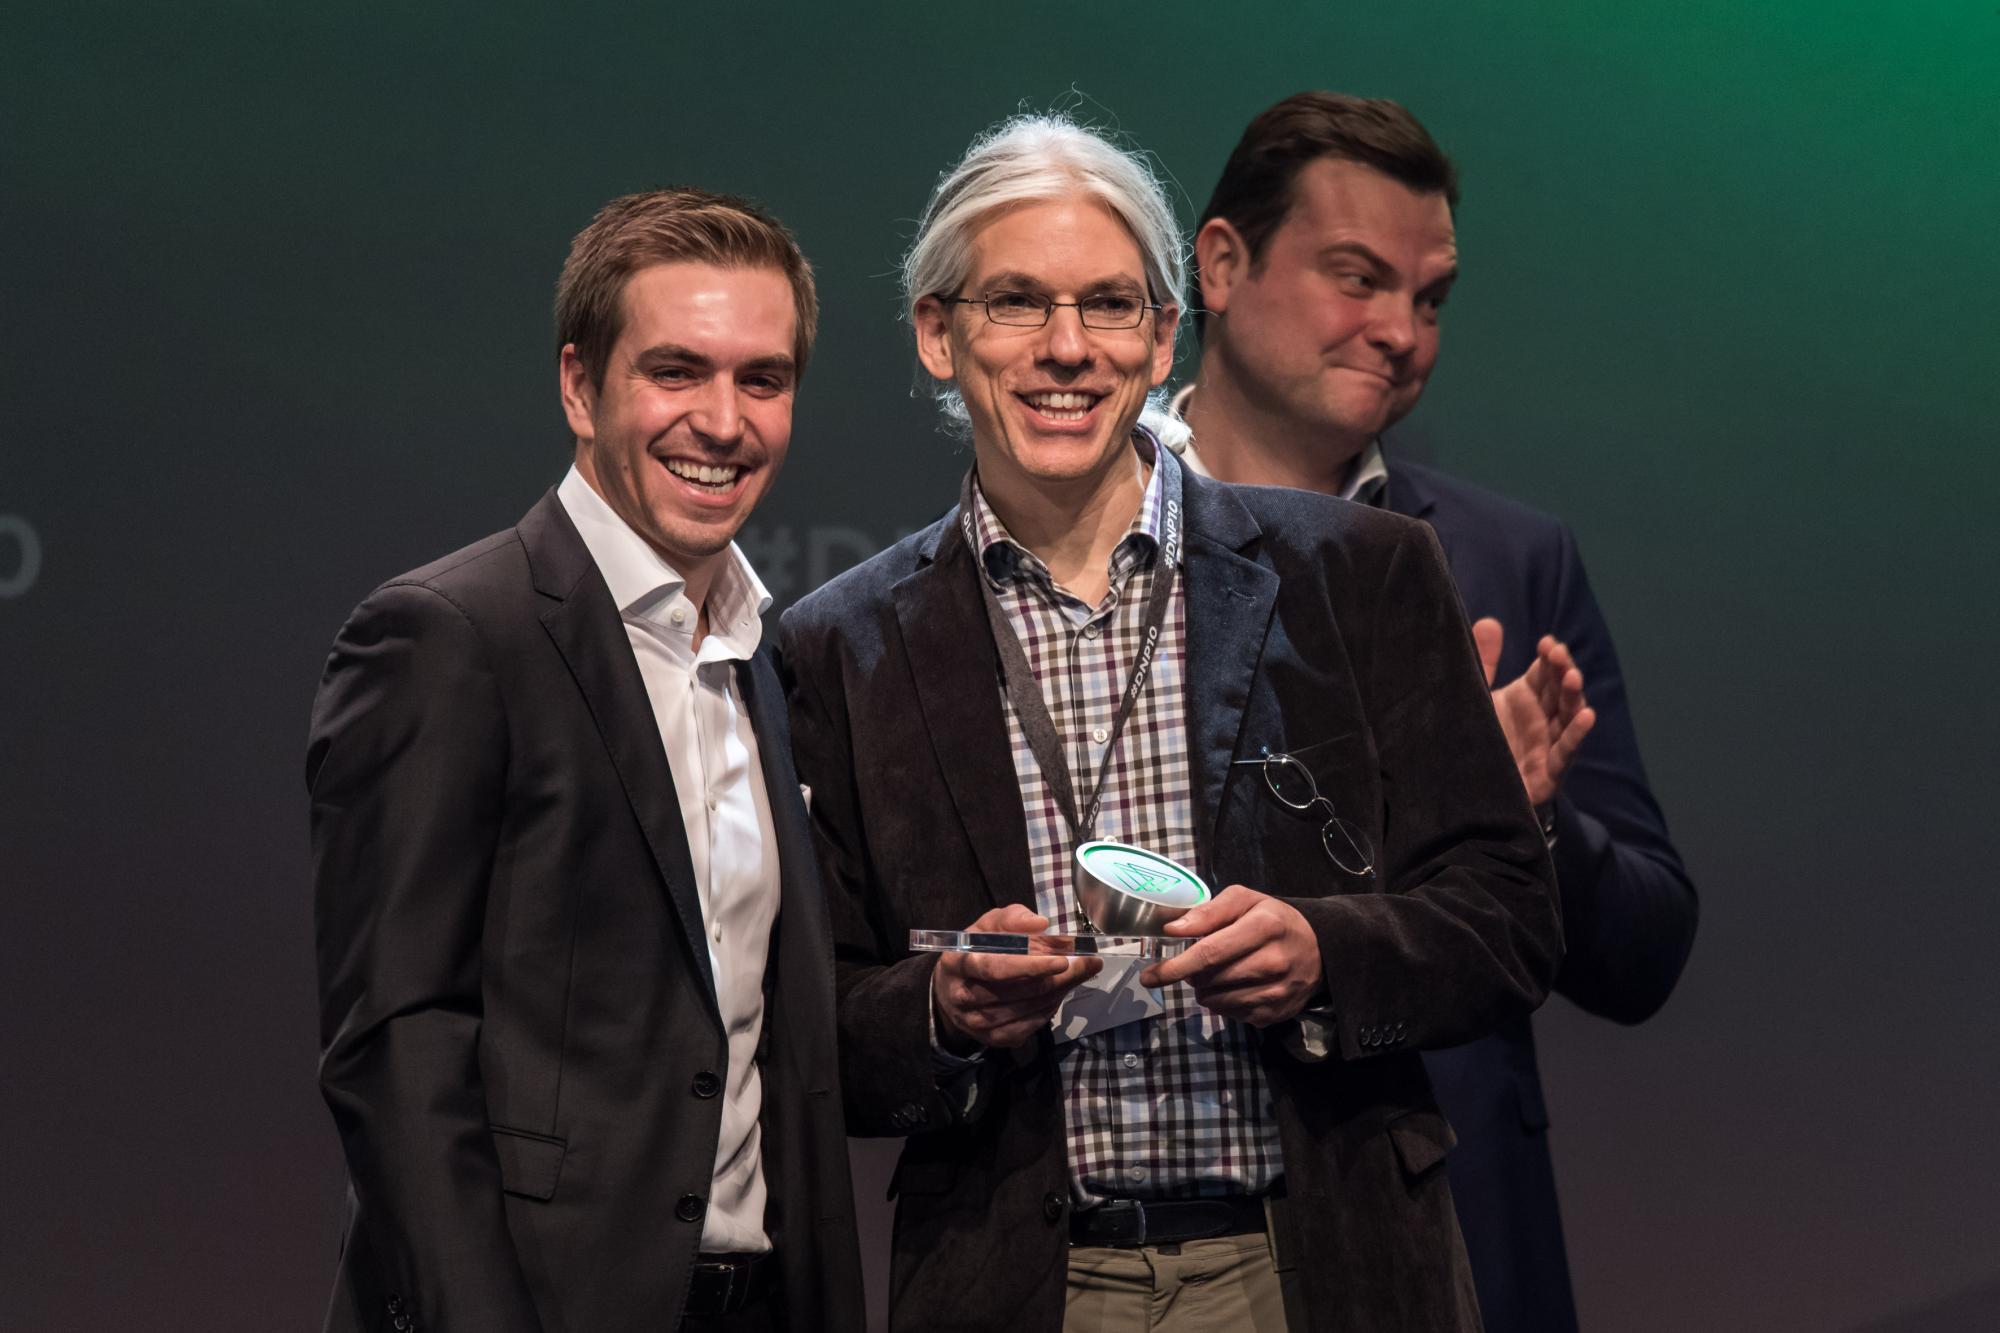 Martin Aufmuth und Philipp Lahm bei der Verleihung des Nachhaltigkeitspreises 2017